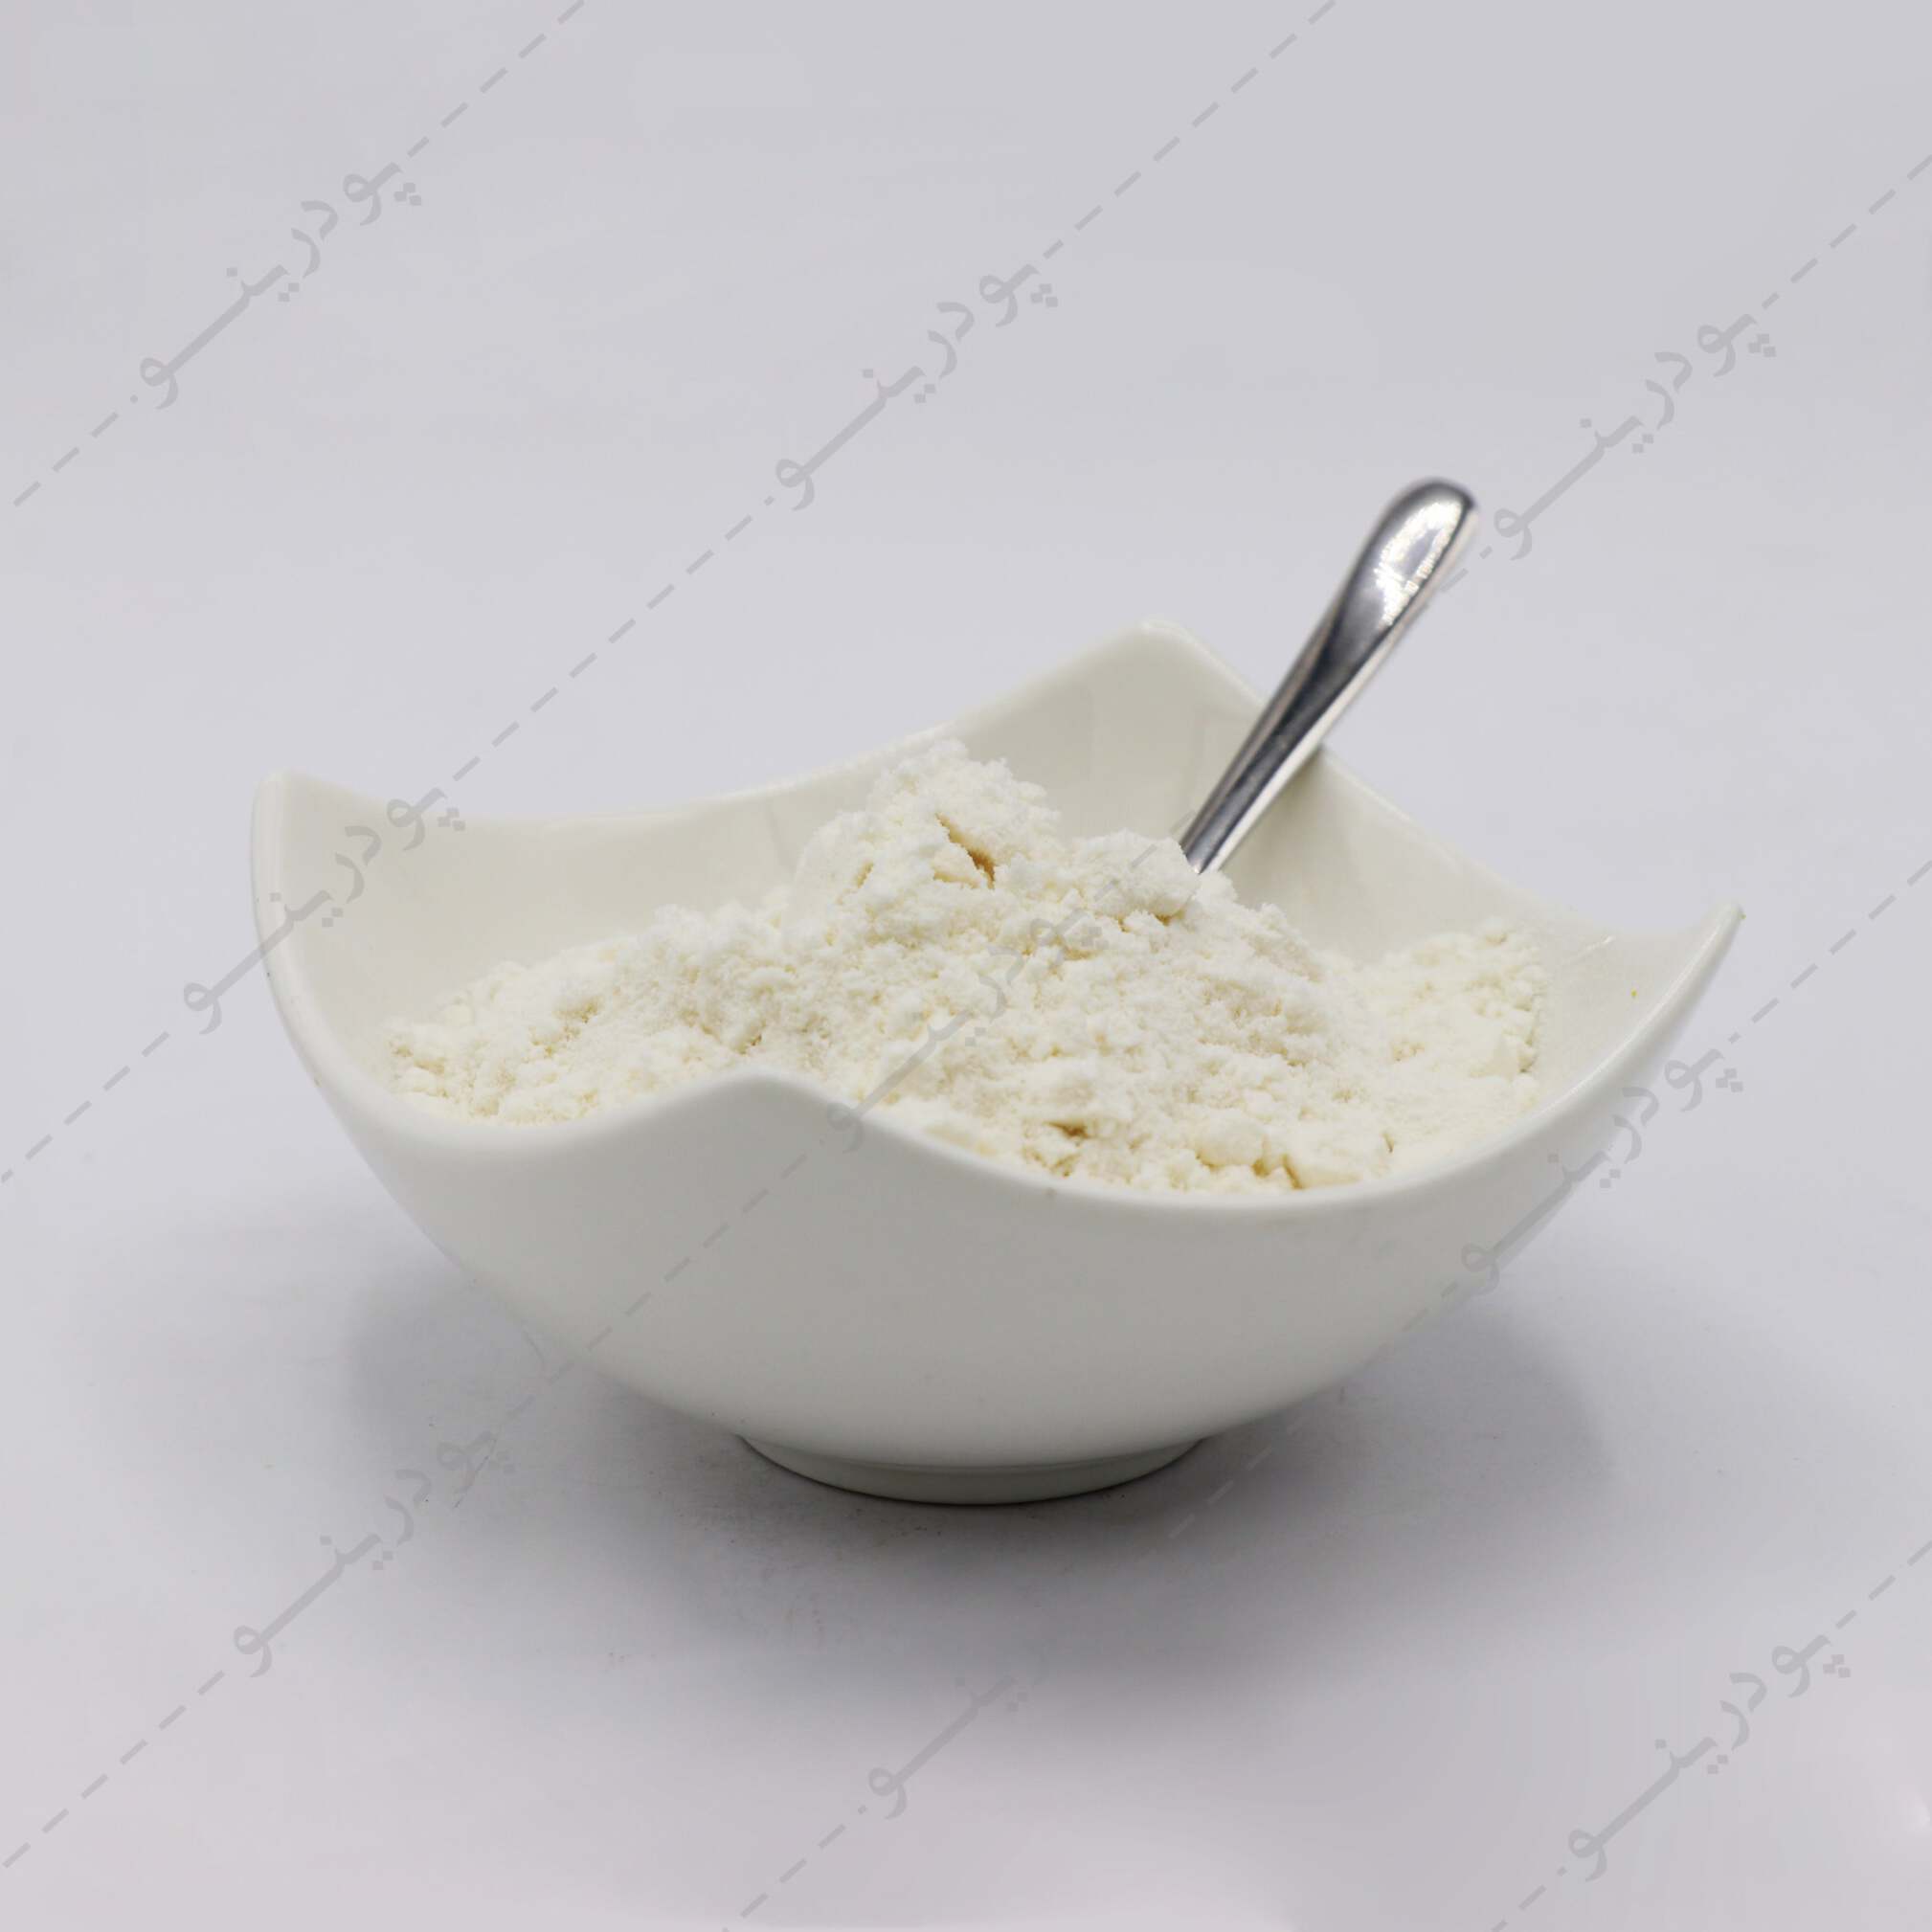  قیمت پودر شیر بادام 